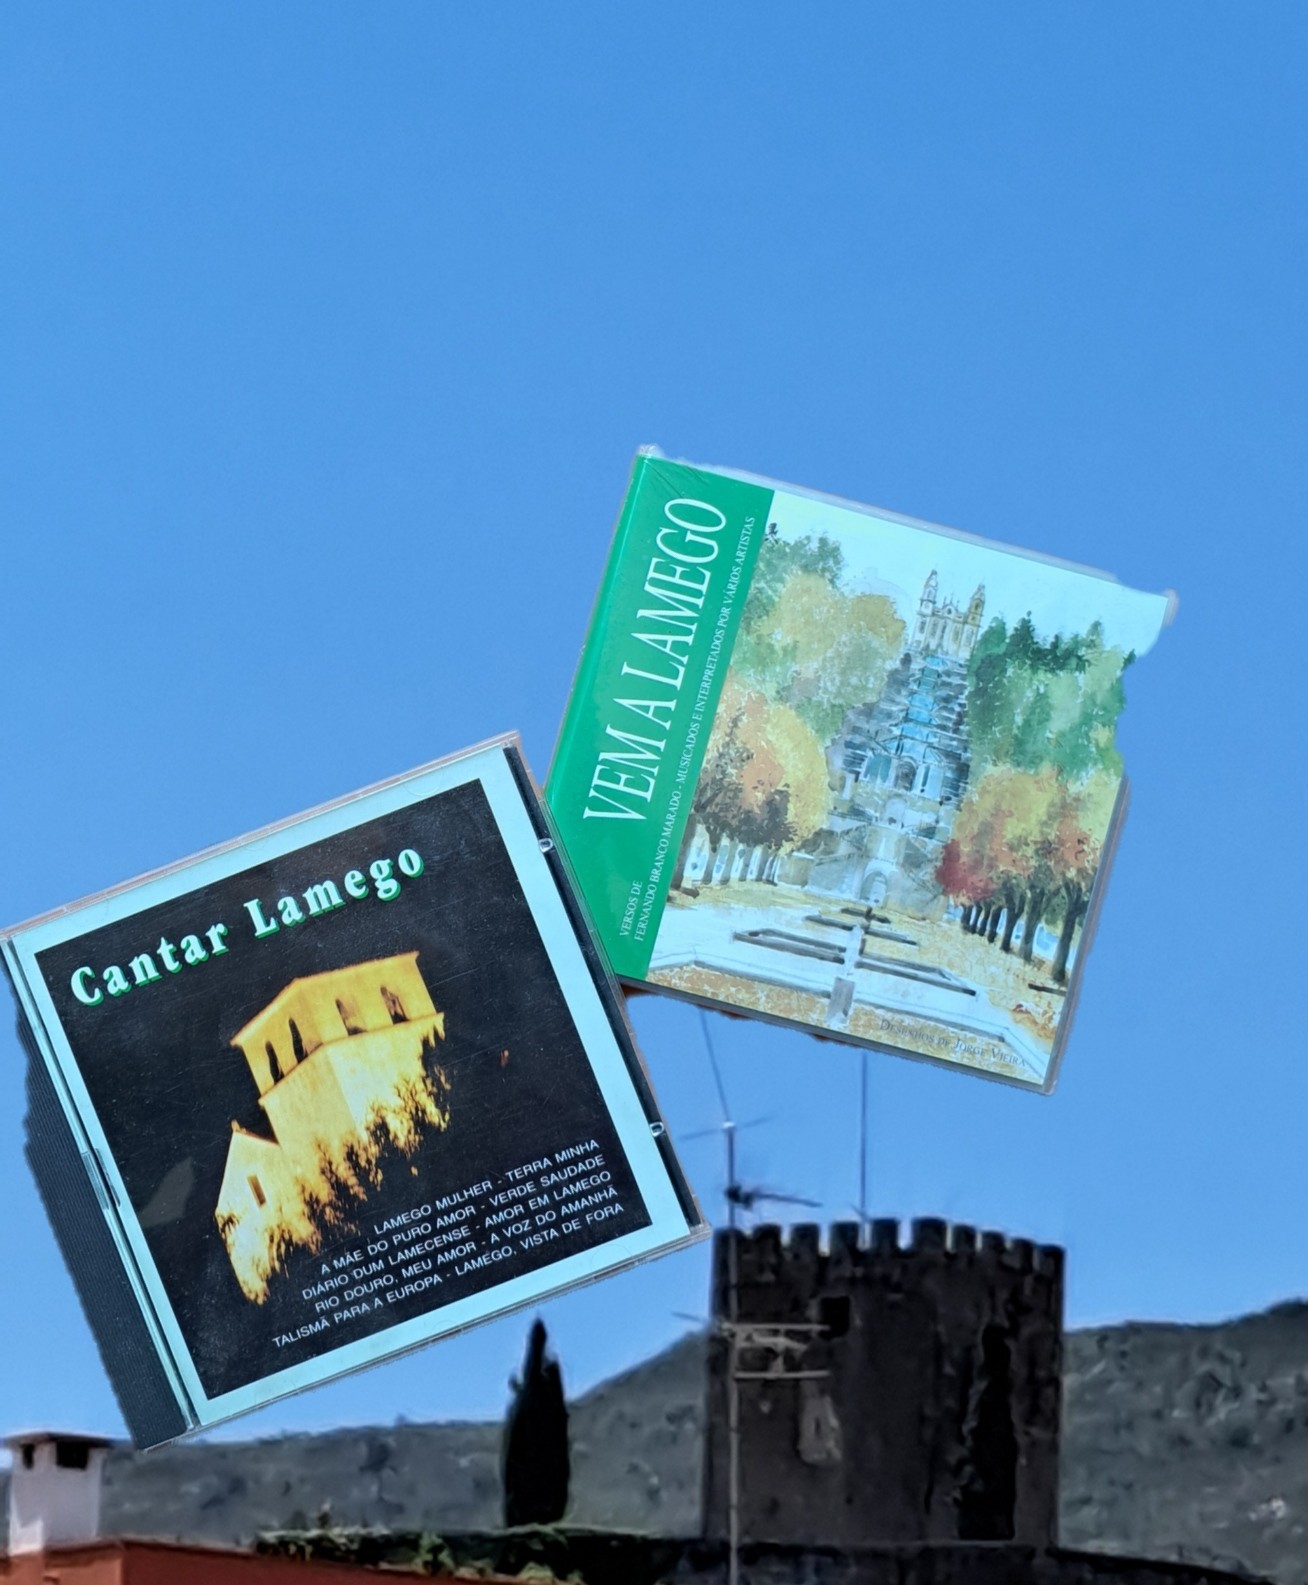 O castelo de Lamego e dois CDs que aqui tenho dedicados à cidade "colados" no céu: "Cantar Lamego" e "Vem a Lamego"